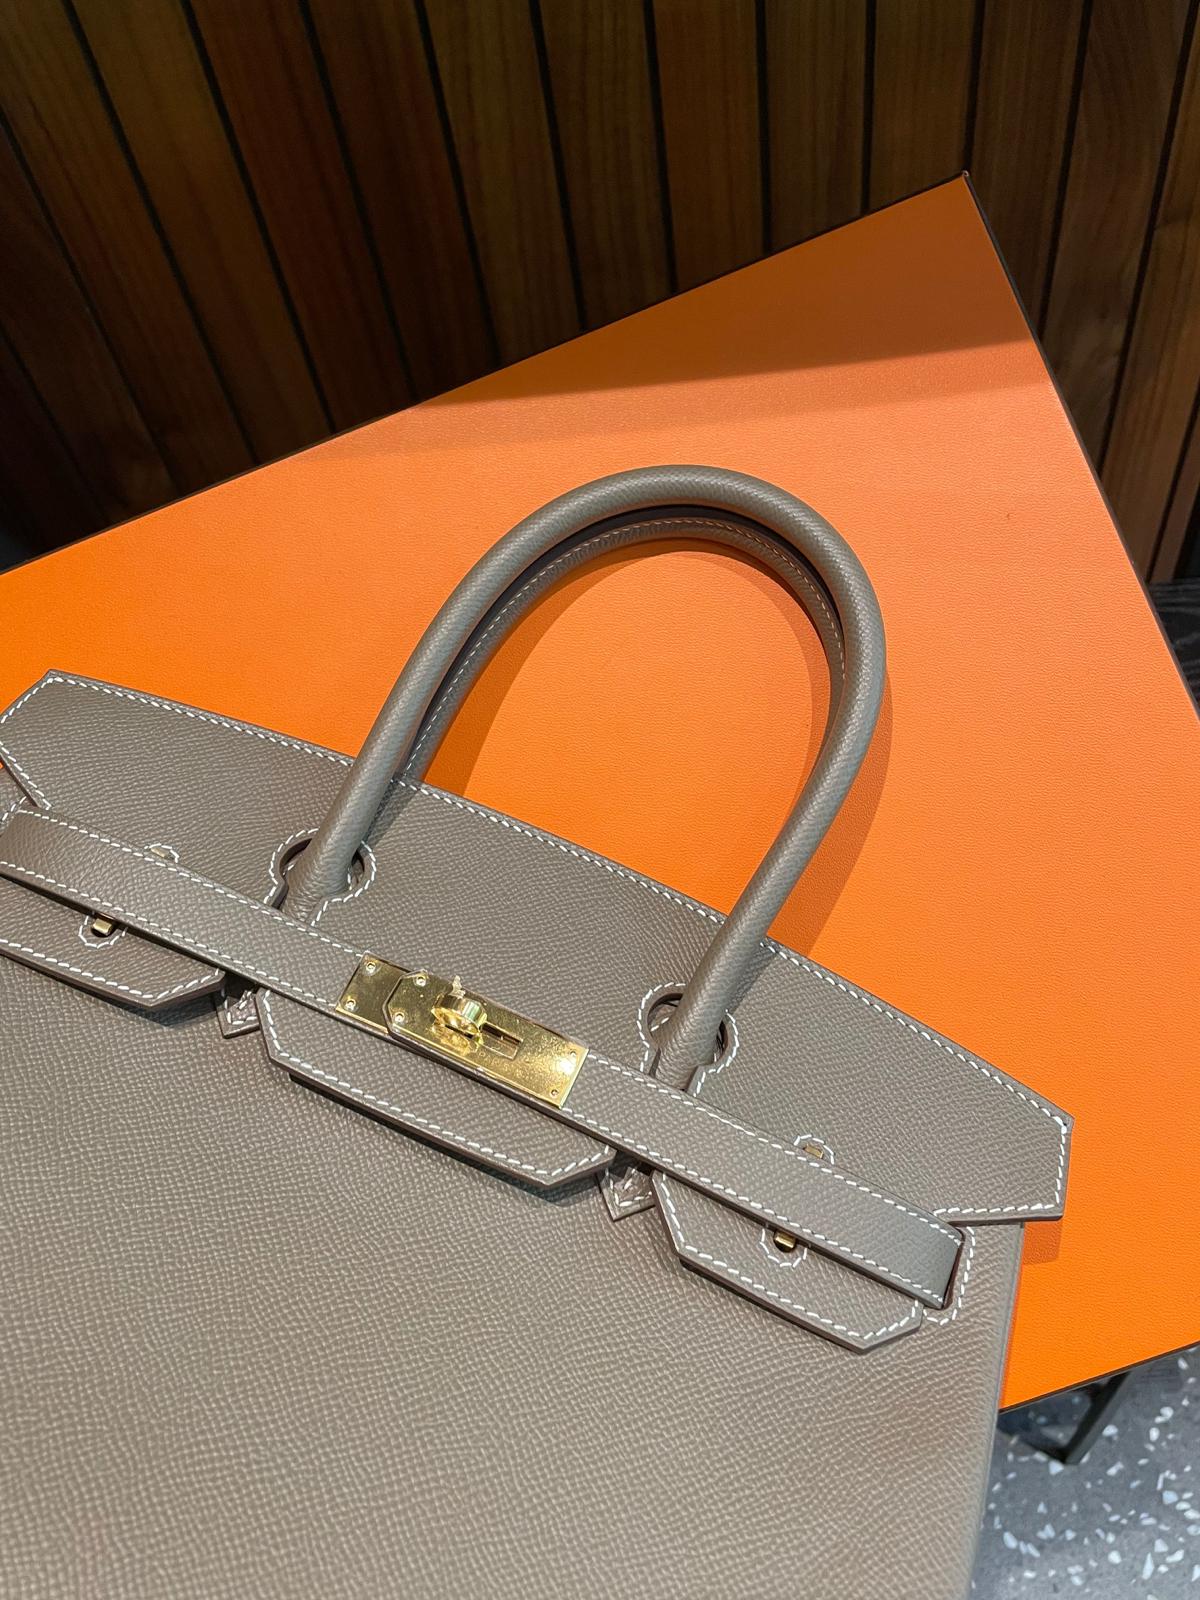 Farbige Luxus-Handtaschen von Gucci, Louis Vuitton und Valentino